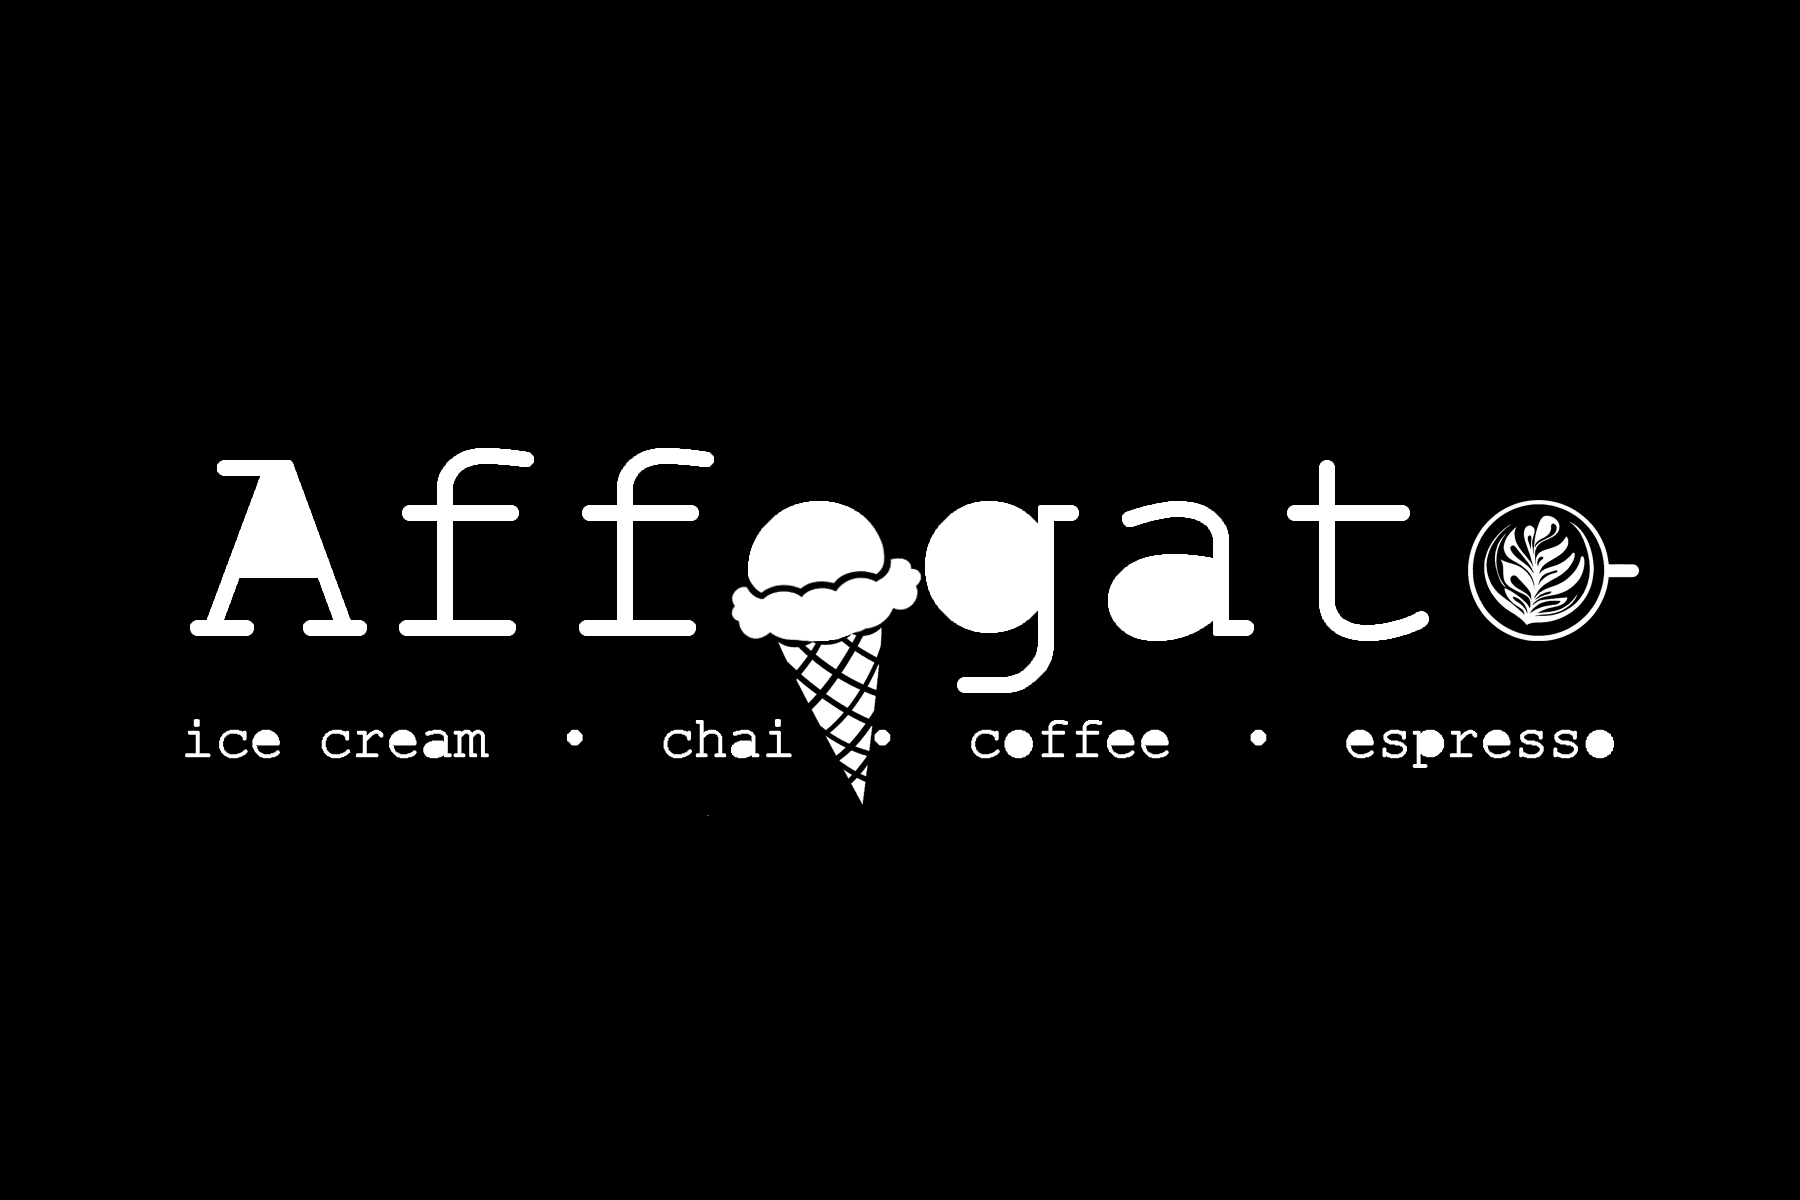 Affogato - Coffee - Chai - Ice Cream - affogatopdx | Affogato